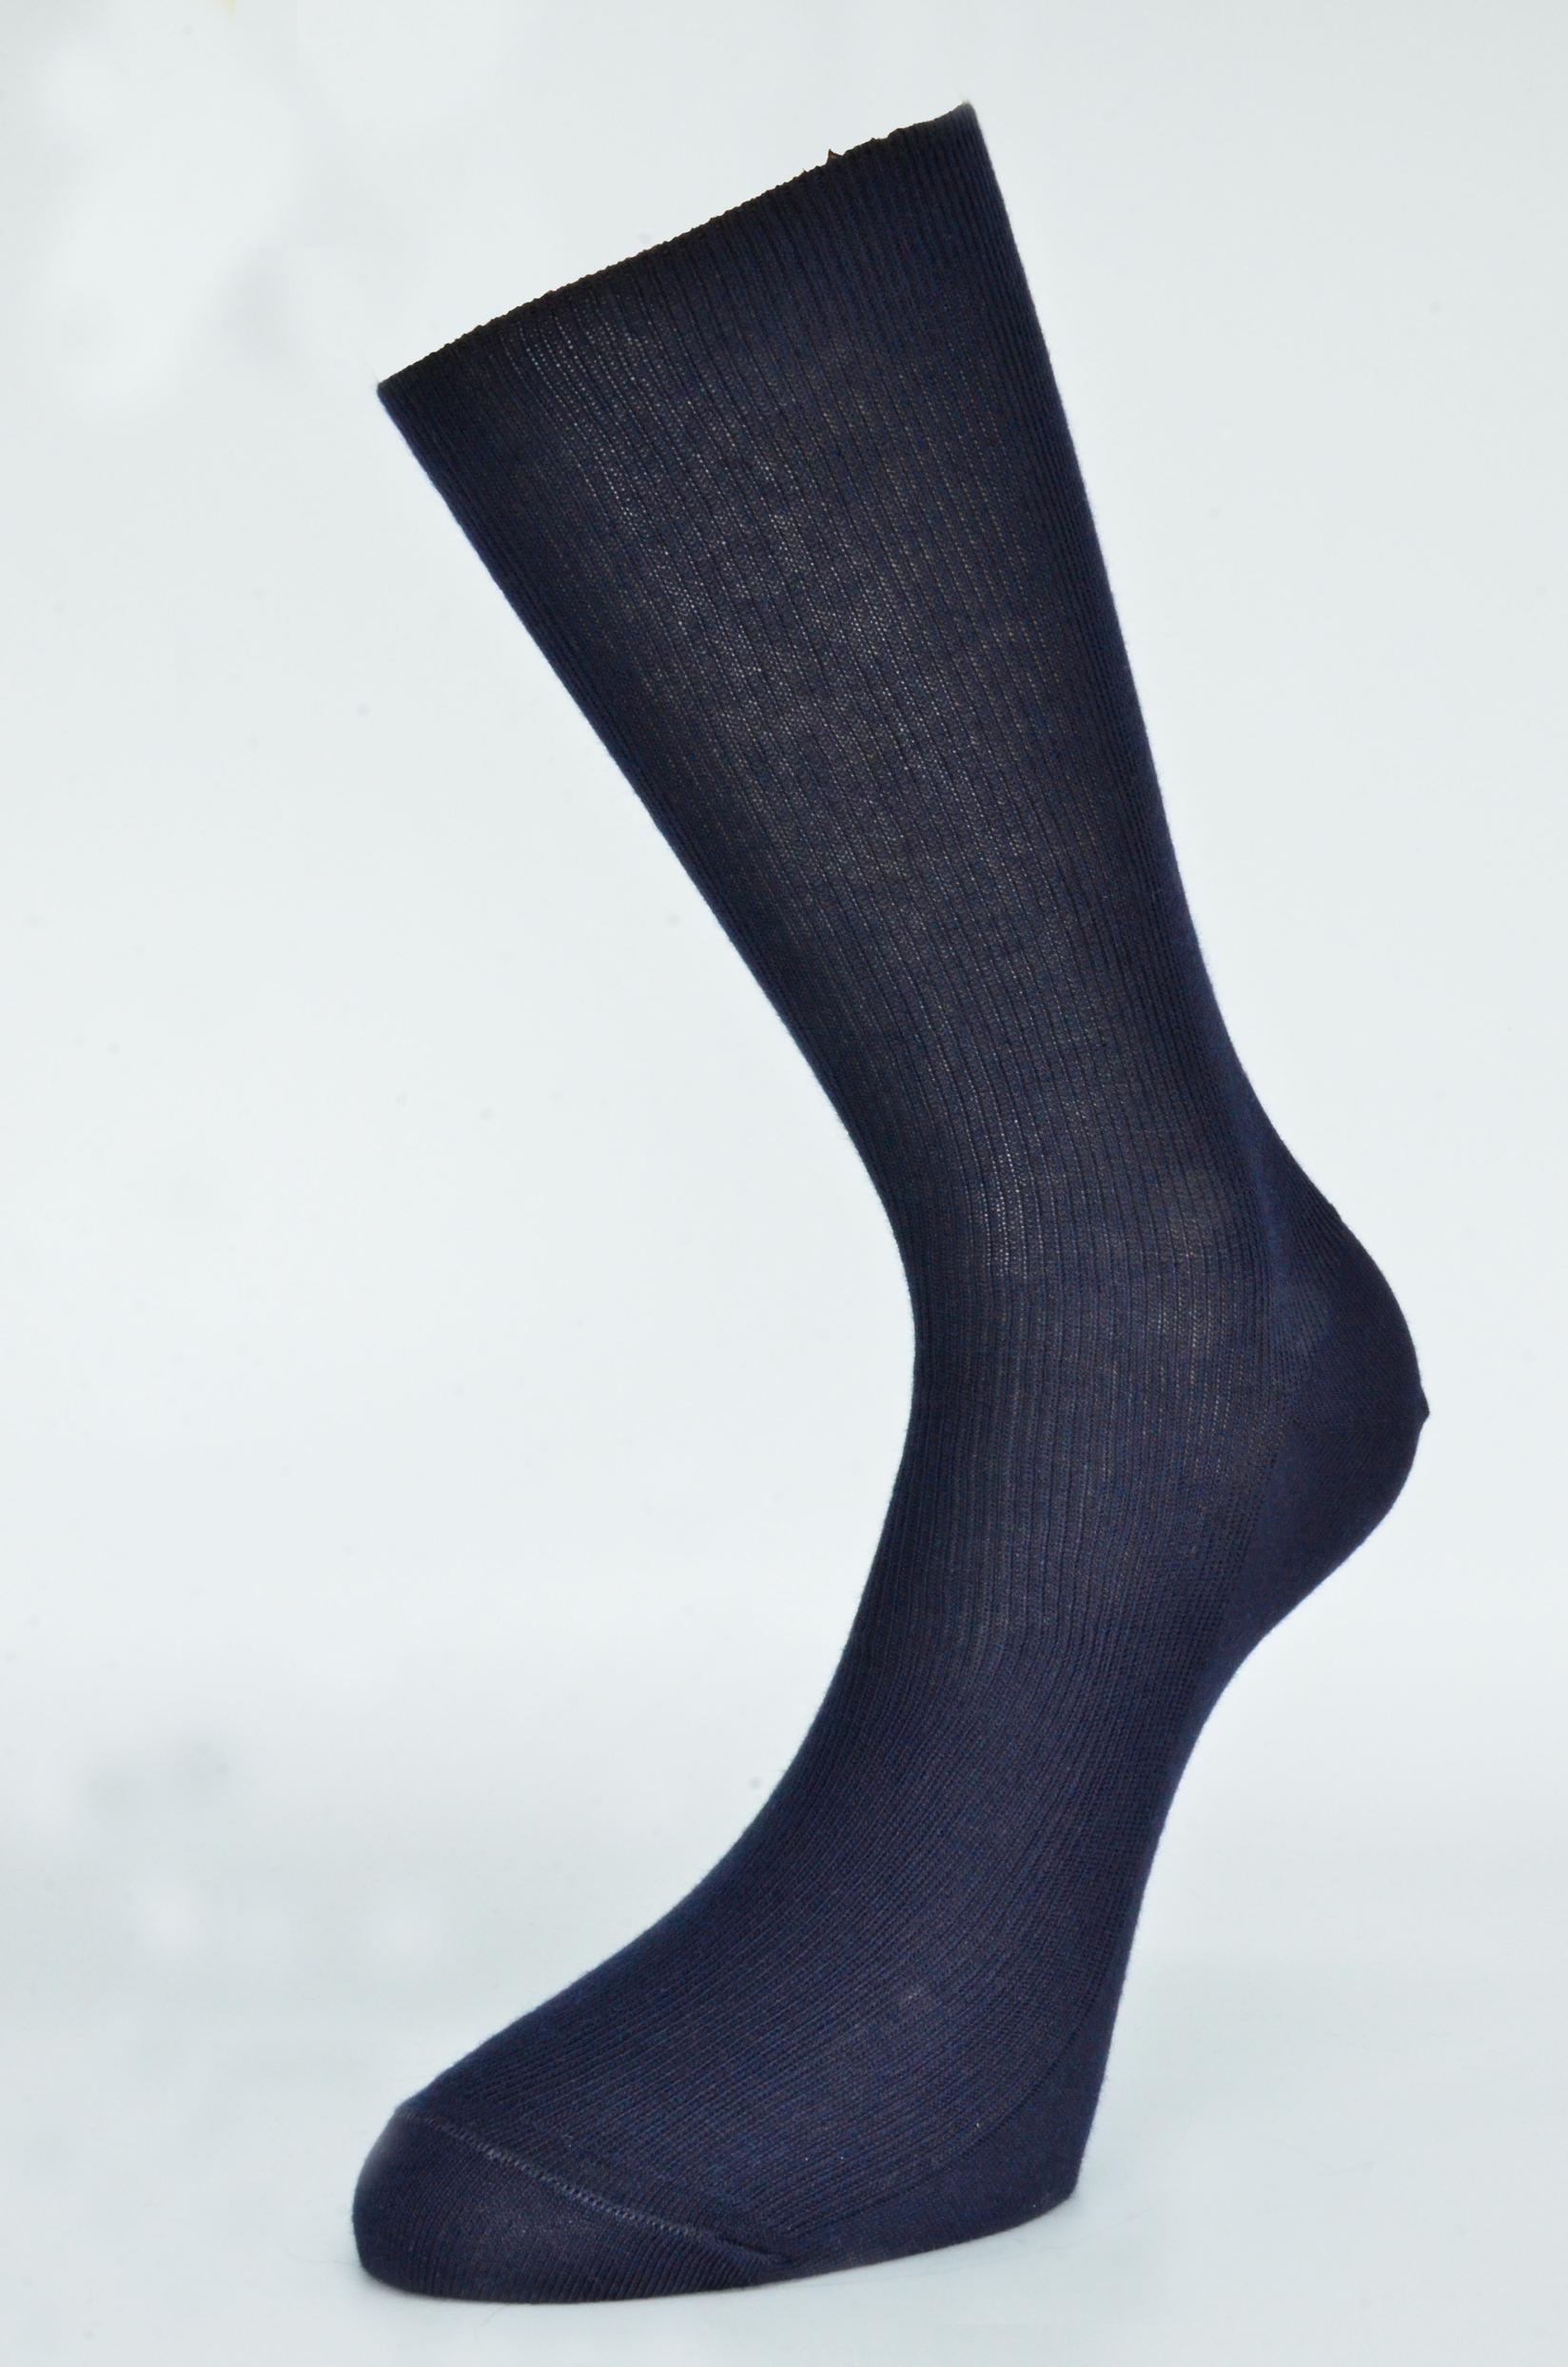 Selected image for GERBI Muške čarape Comfort teget